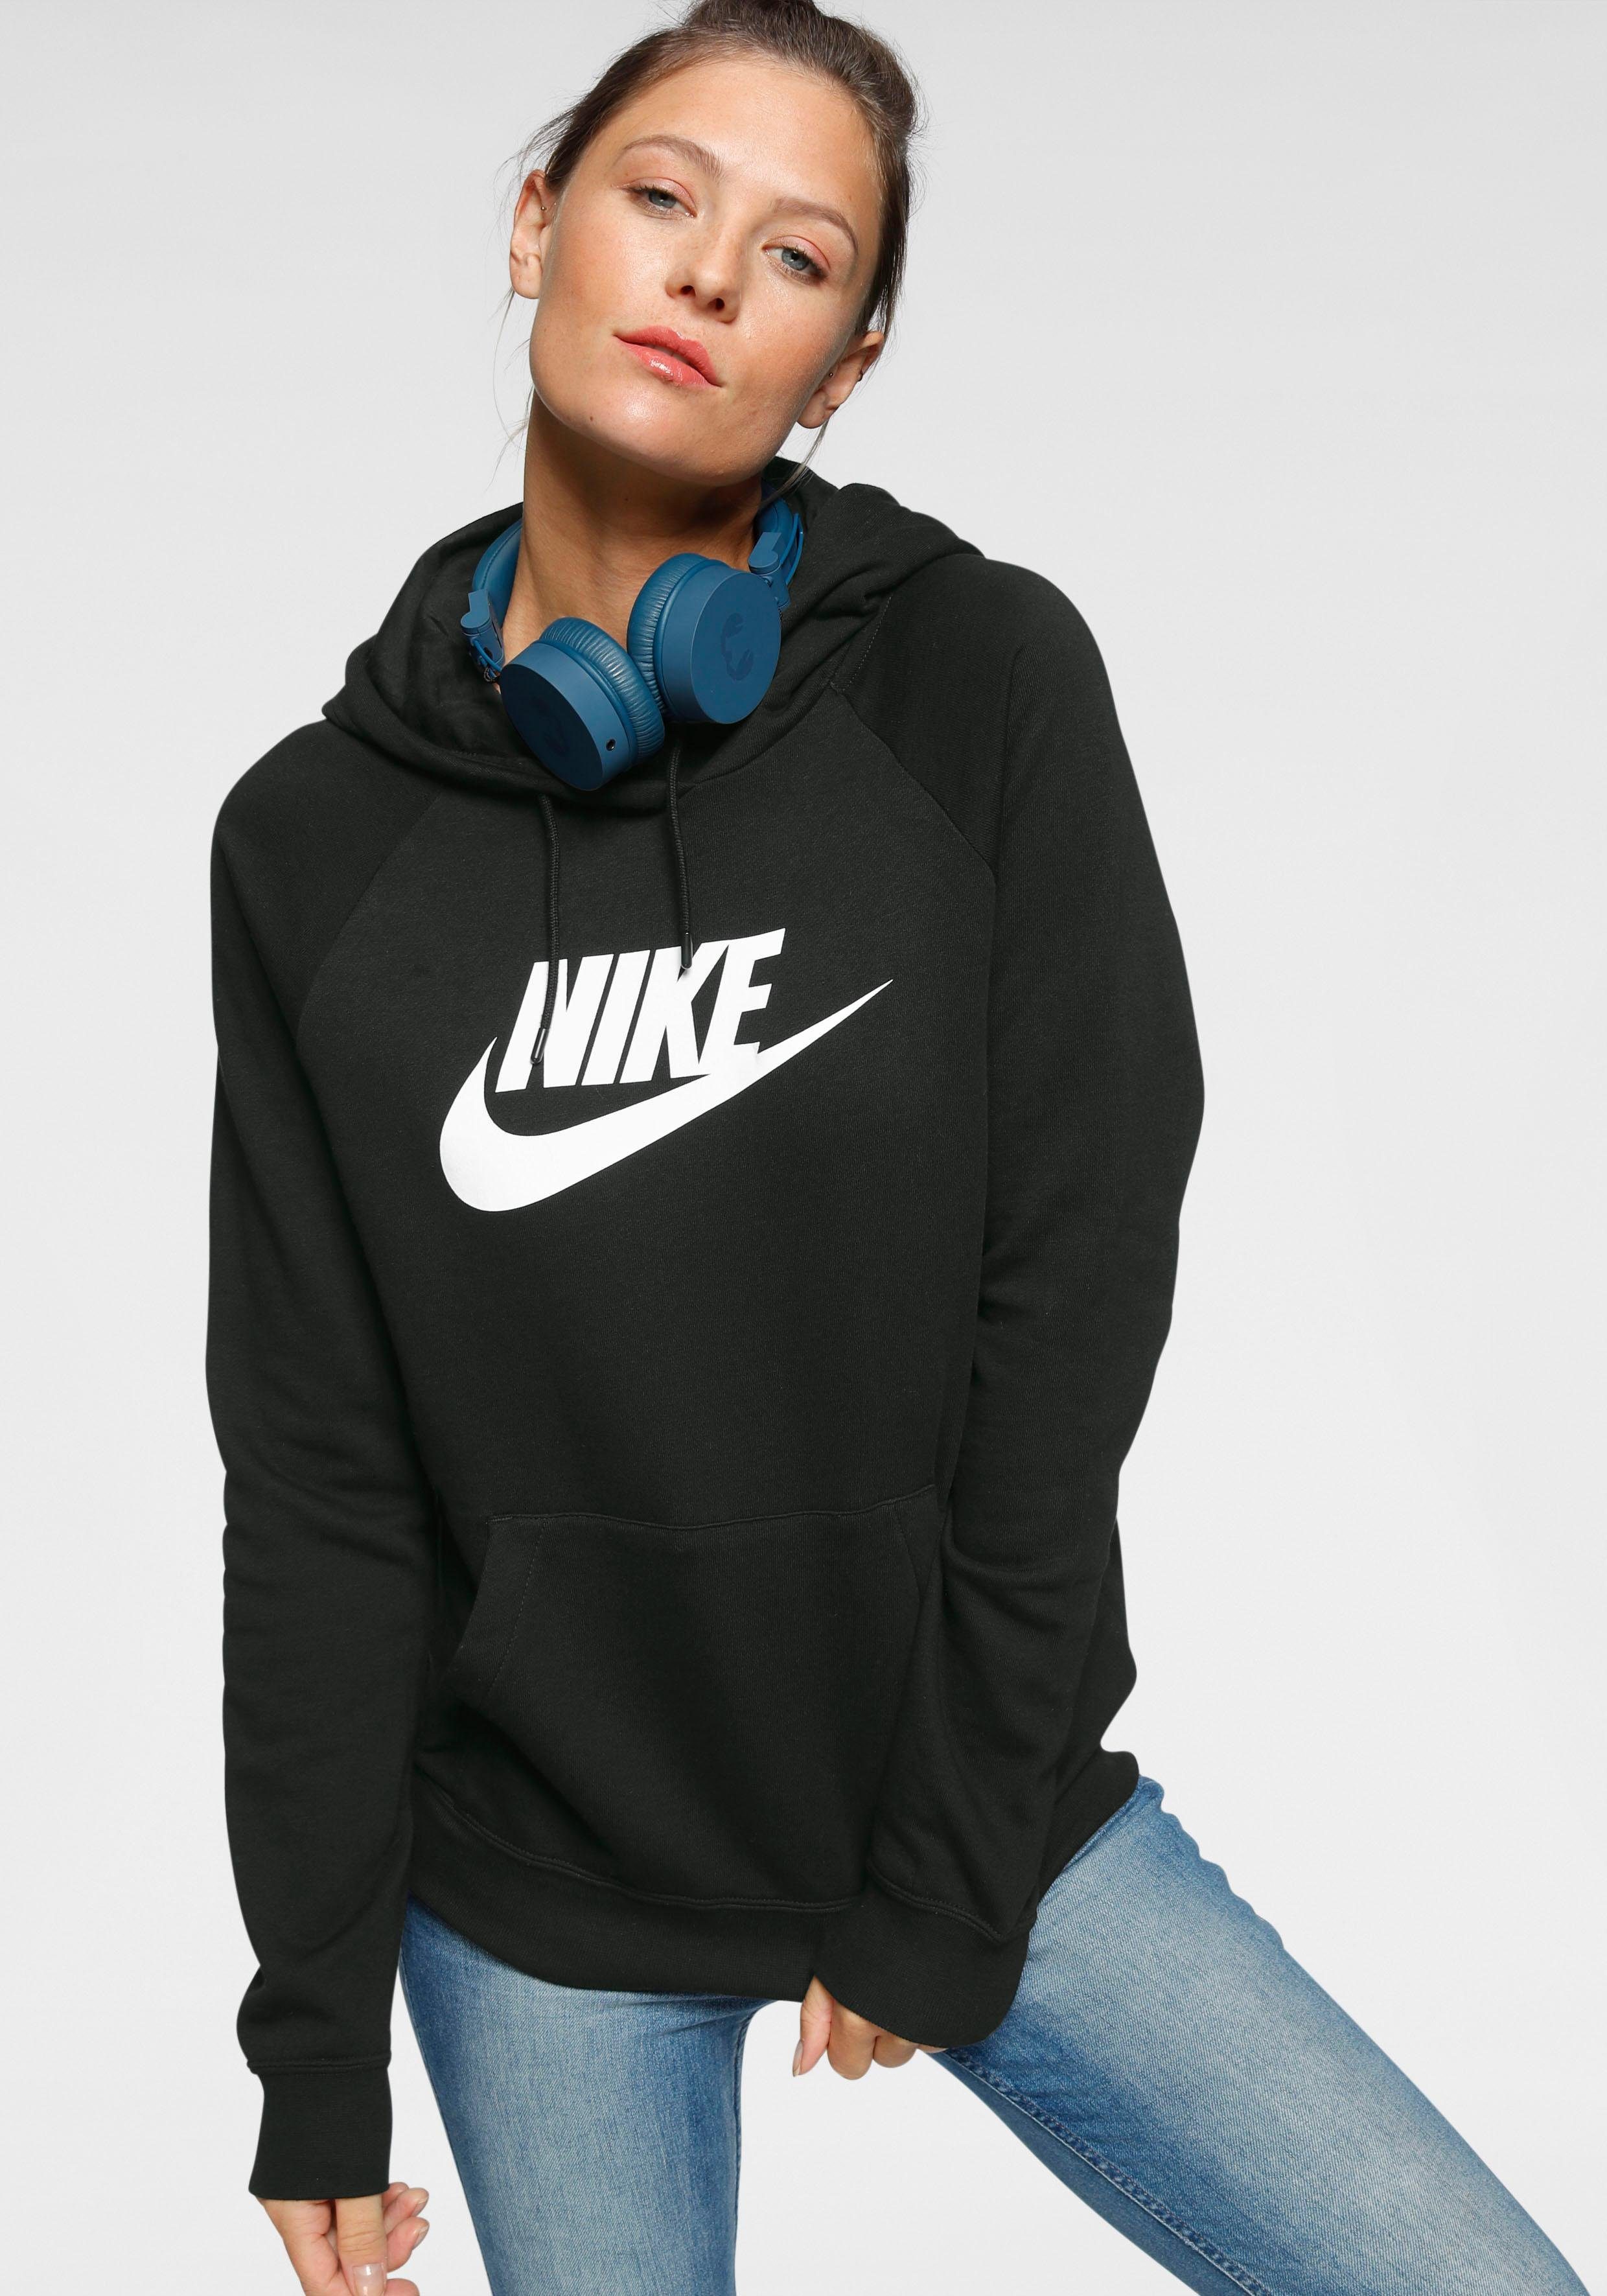 Nike Pullover online kaufen | OTTO